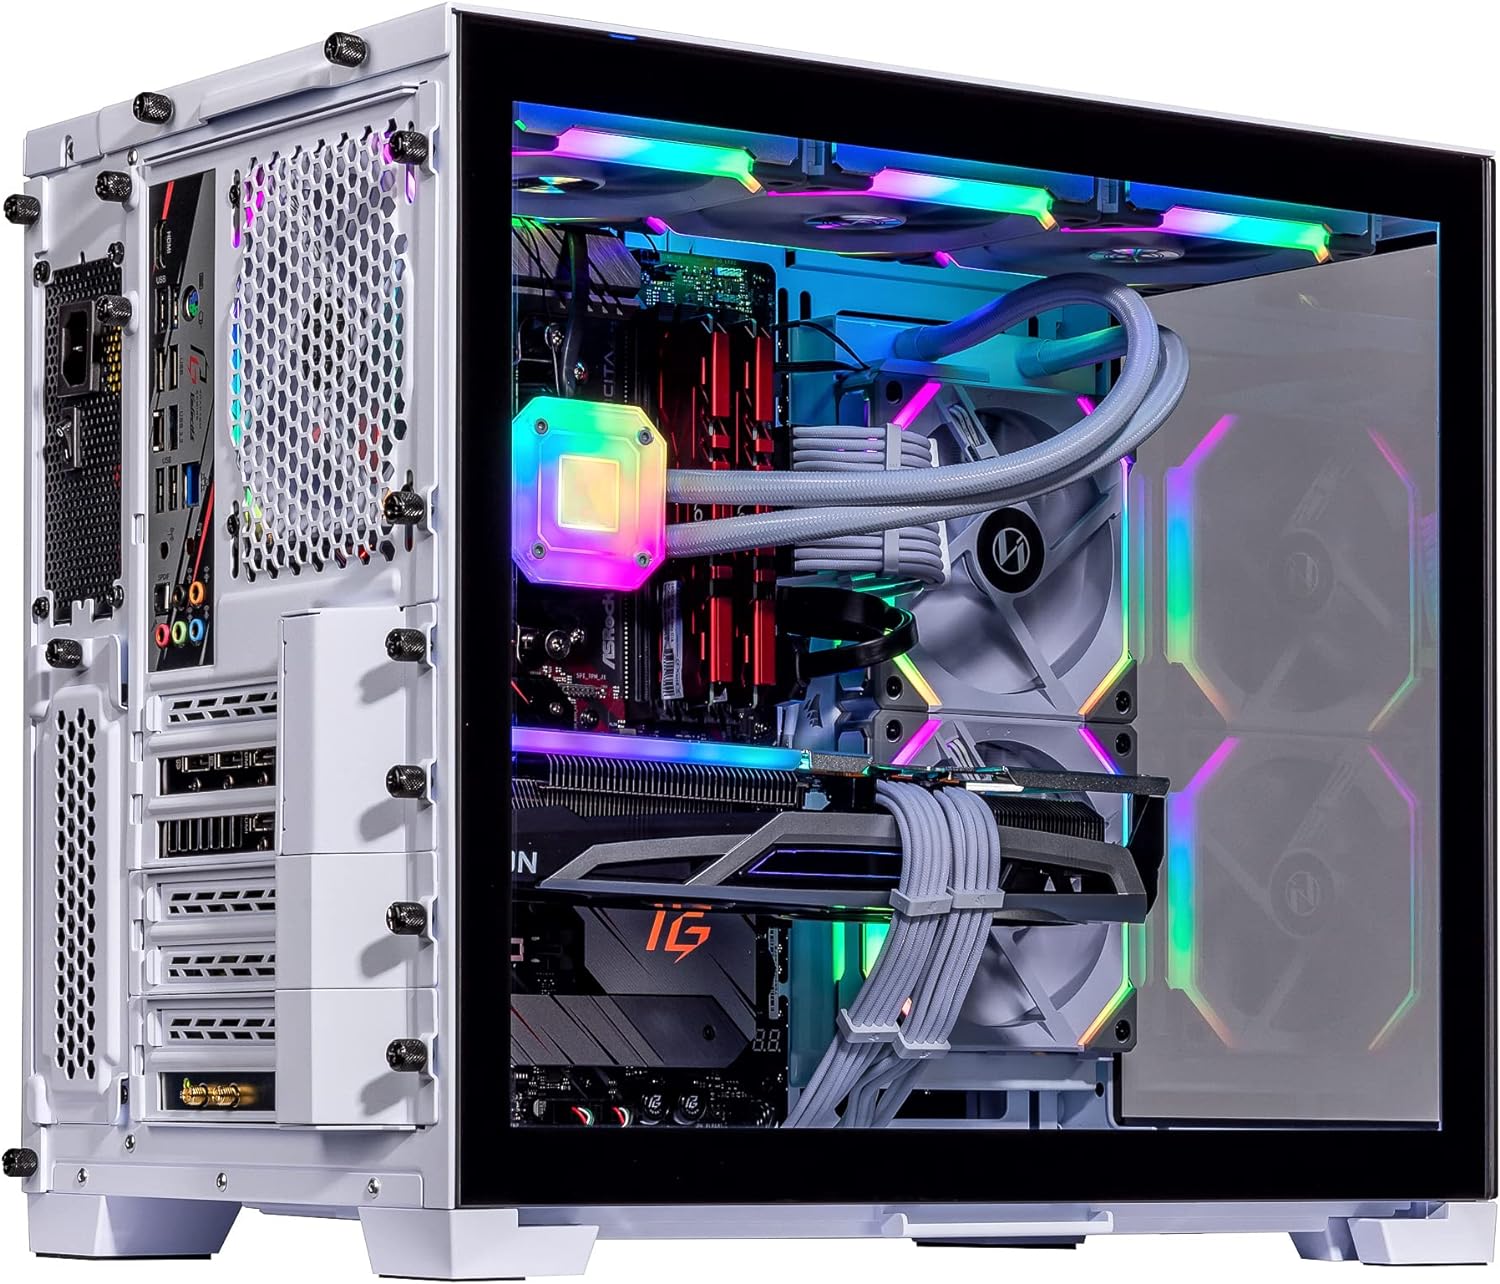 Velztorm Mini Lux Gaming Desktop PC (AMD Ryzen 9 5950X 16-Core, Radeon RX 7900 XTX, 16GB RAM, 1TB PCIe SSD + 1TB HDD (3.5), WiFi, USB 3.2, HDMI, Display Port, Win 10 Pro)